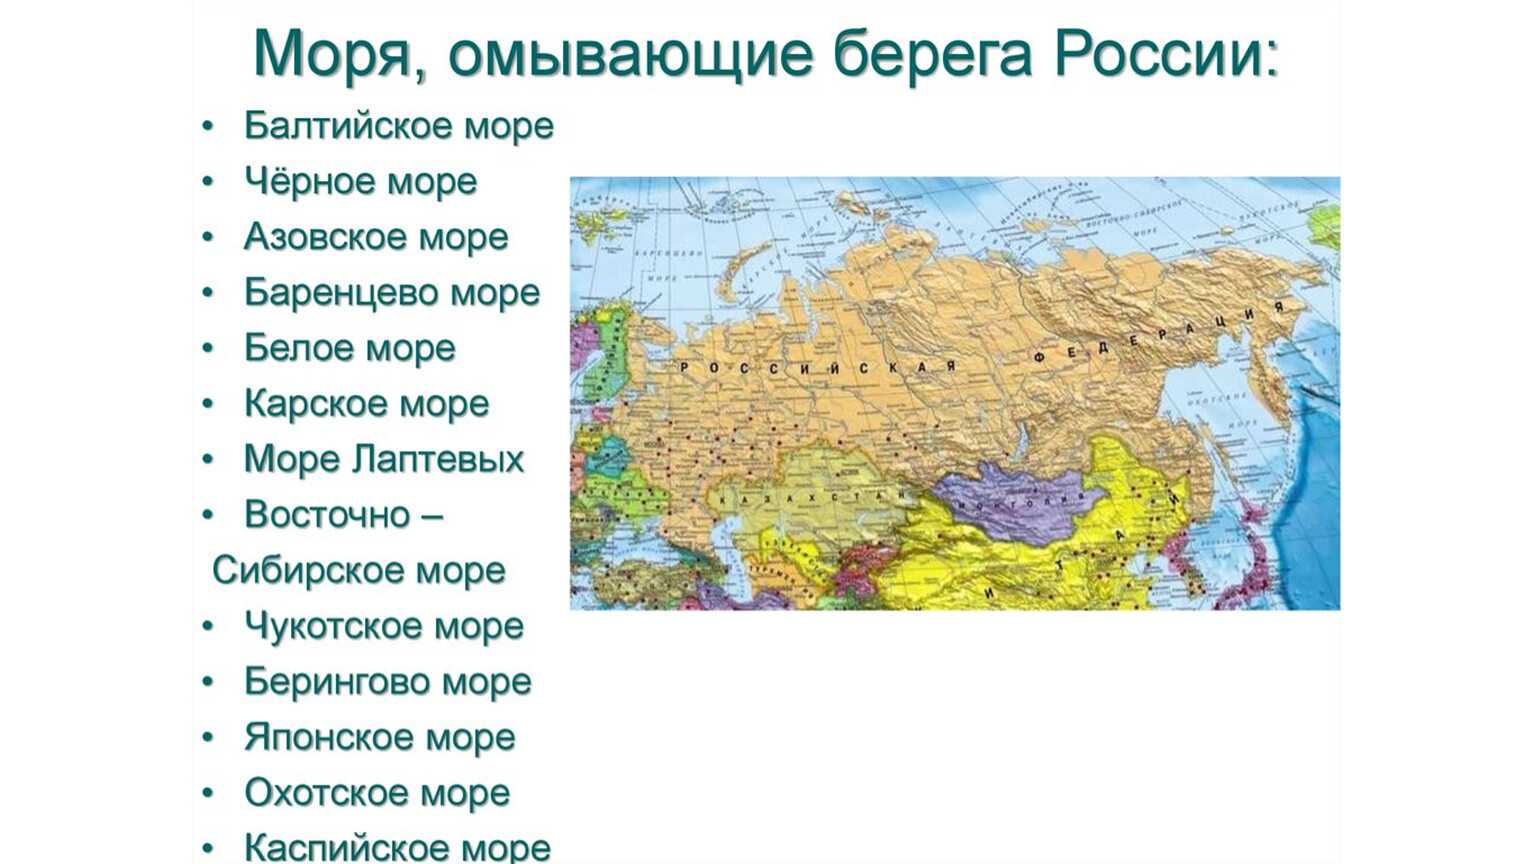 Самое большое море в евразии. Сколько морей морей омывают Россию. Моря России список 12 морей. Моря омывающие границы России. Моря омывающииероссию.